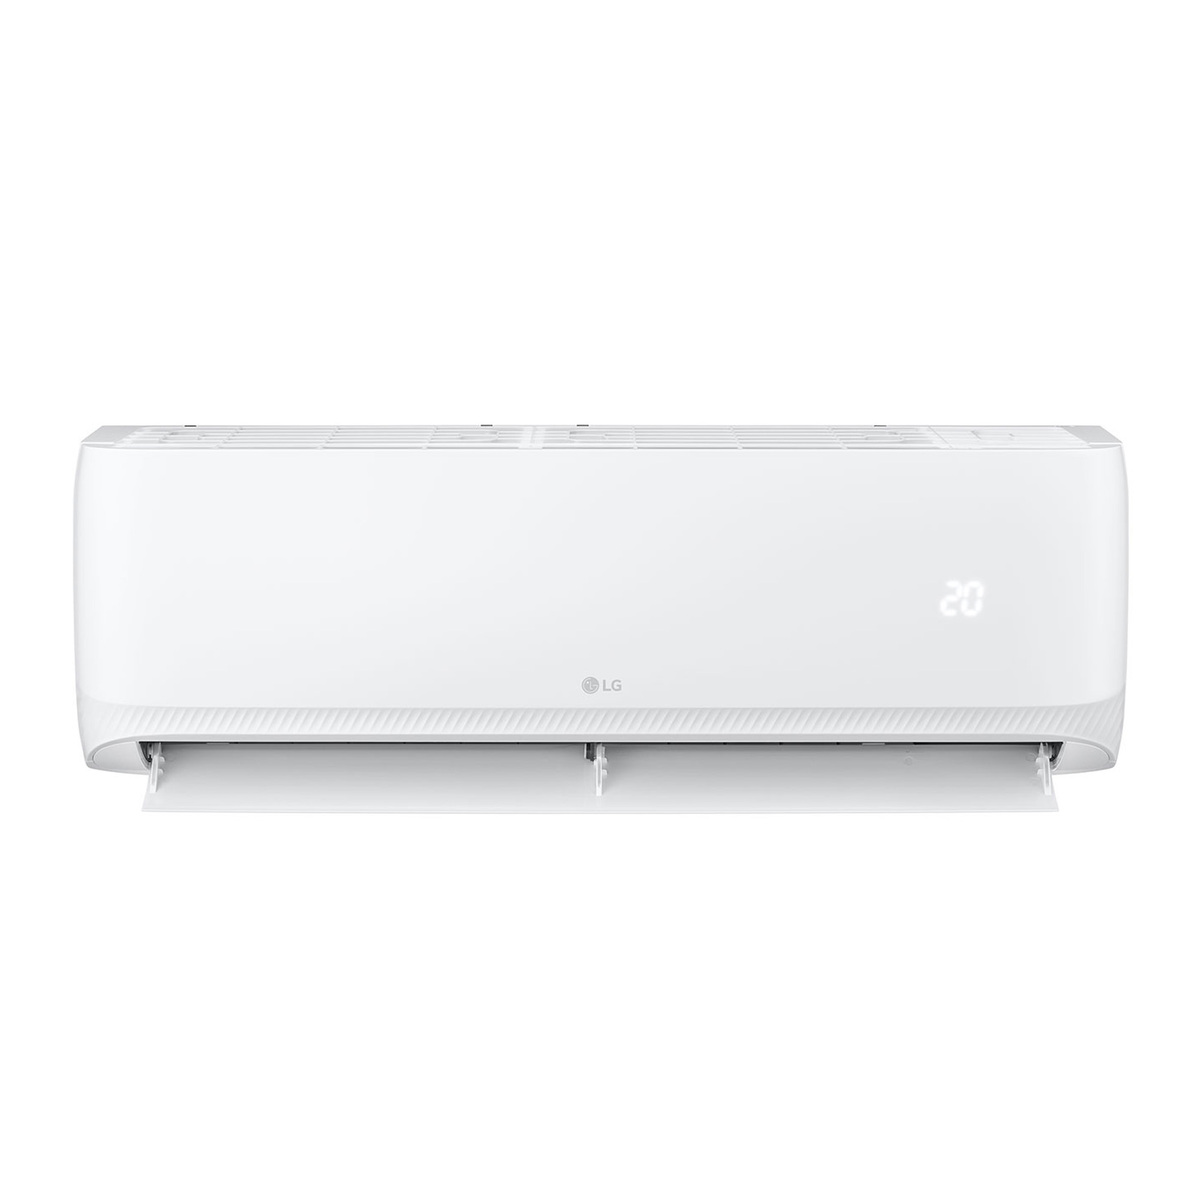 LG Split Air Conditioner, Rotary Compressor, 2 Ton, White, T24ZCA